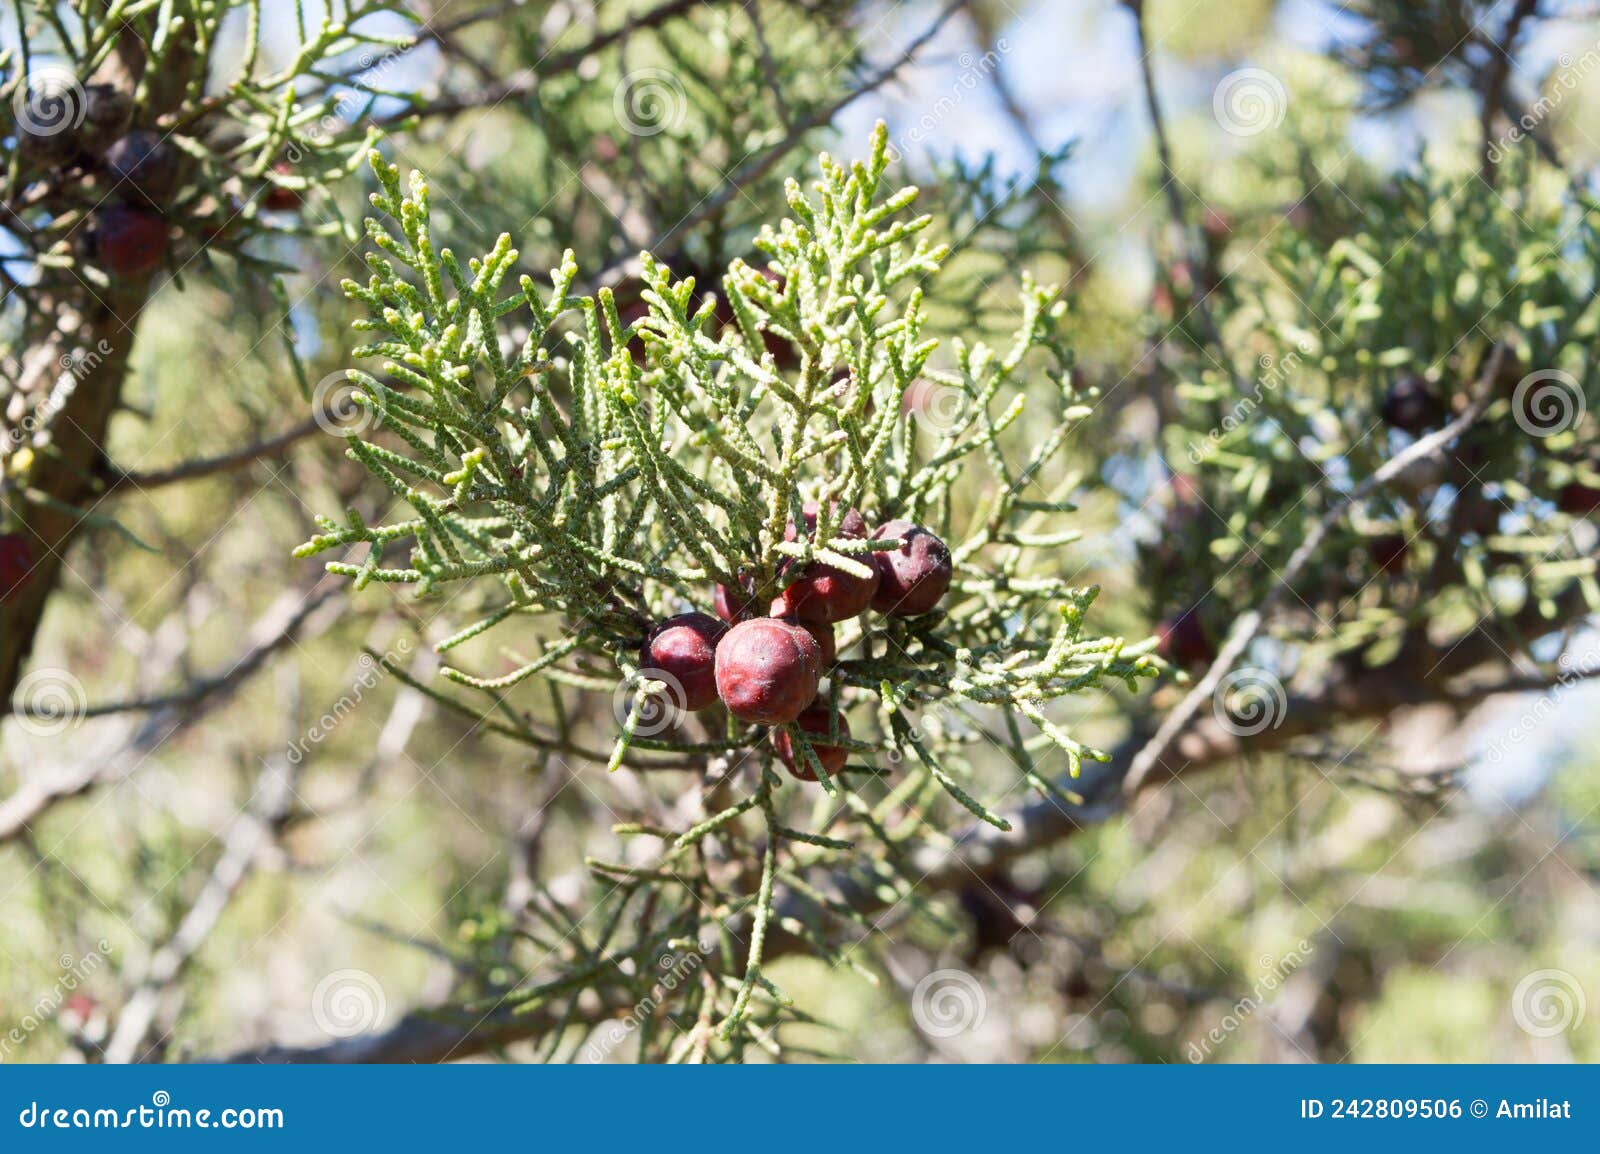 mediterranean shrub juniperus phoenicea